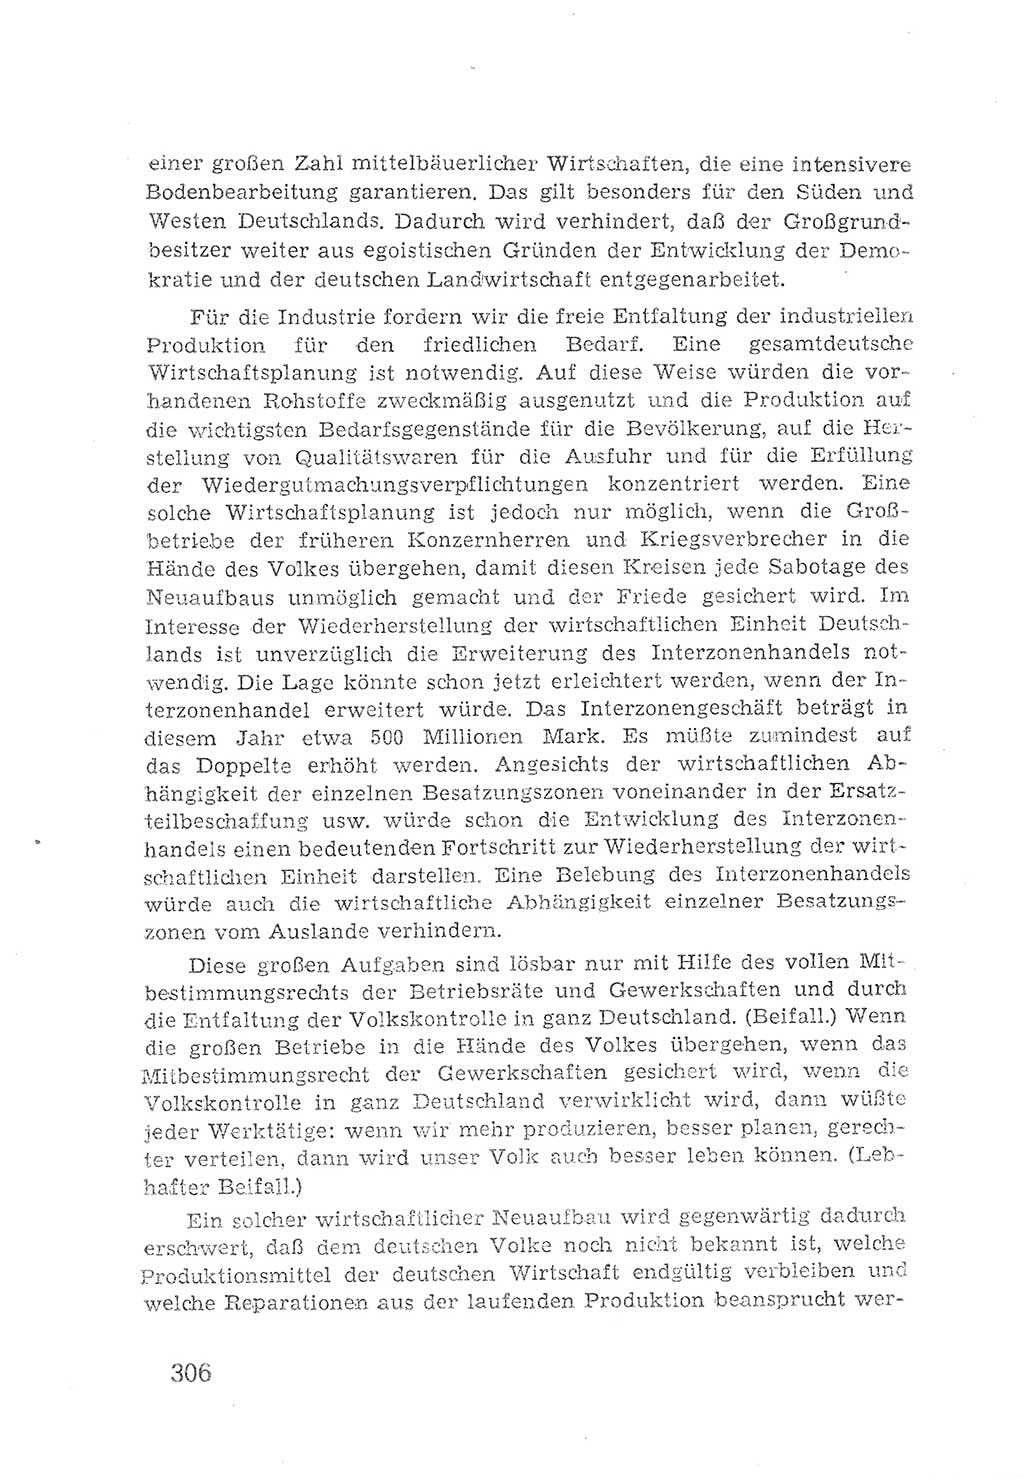 Protokoll der Verhandlungen des 2. Parteitages der Sozialistischen Einheitspartei Deutschlands (SED) [Sowjetische Besatzungszone (SBZ) Deutschlands] 1947, Seite 306 (Prot. Verh. 2. PT SED SBZ Dtl. 1947, S. 306)